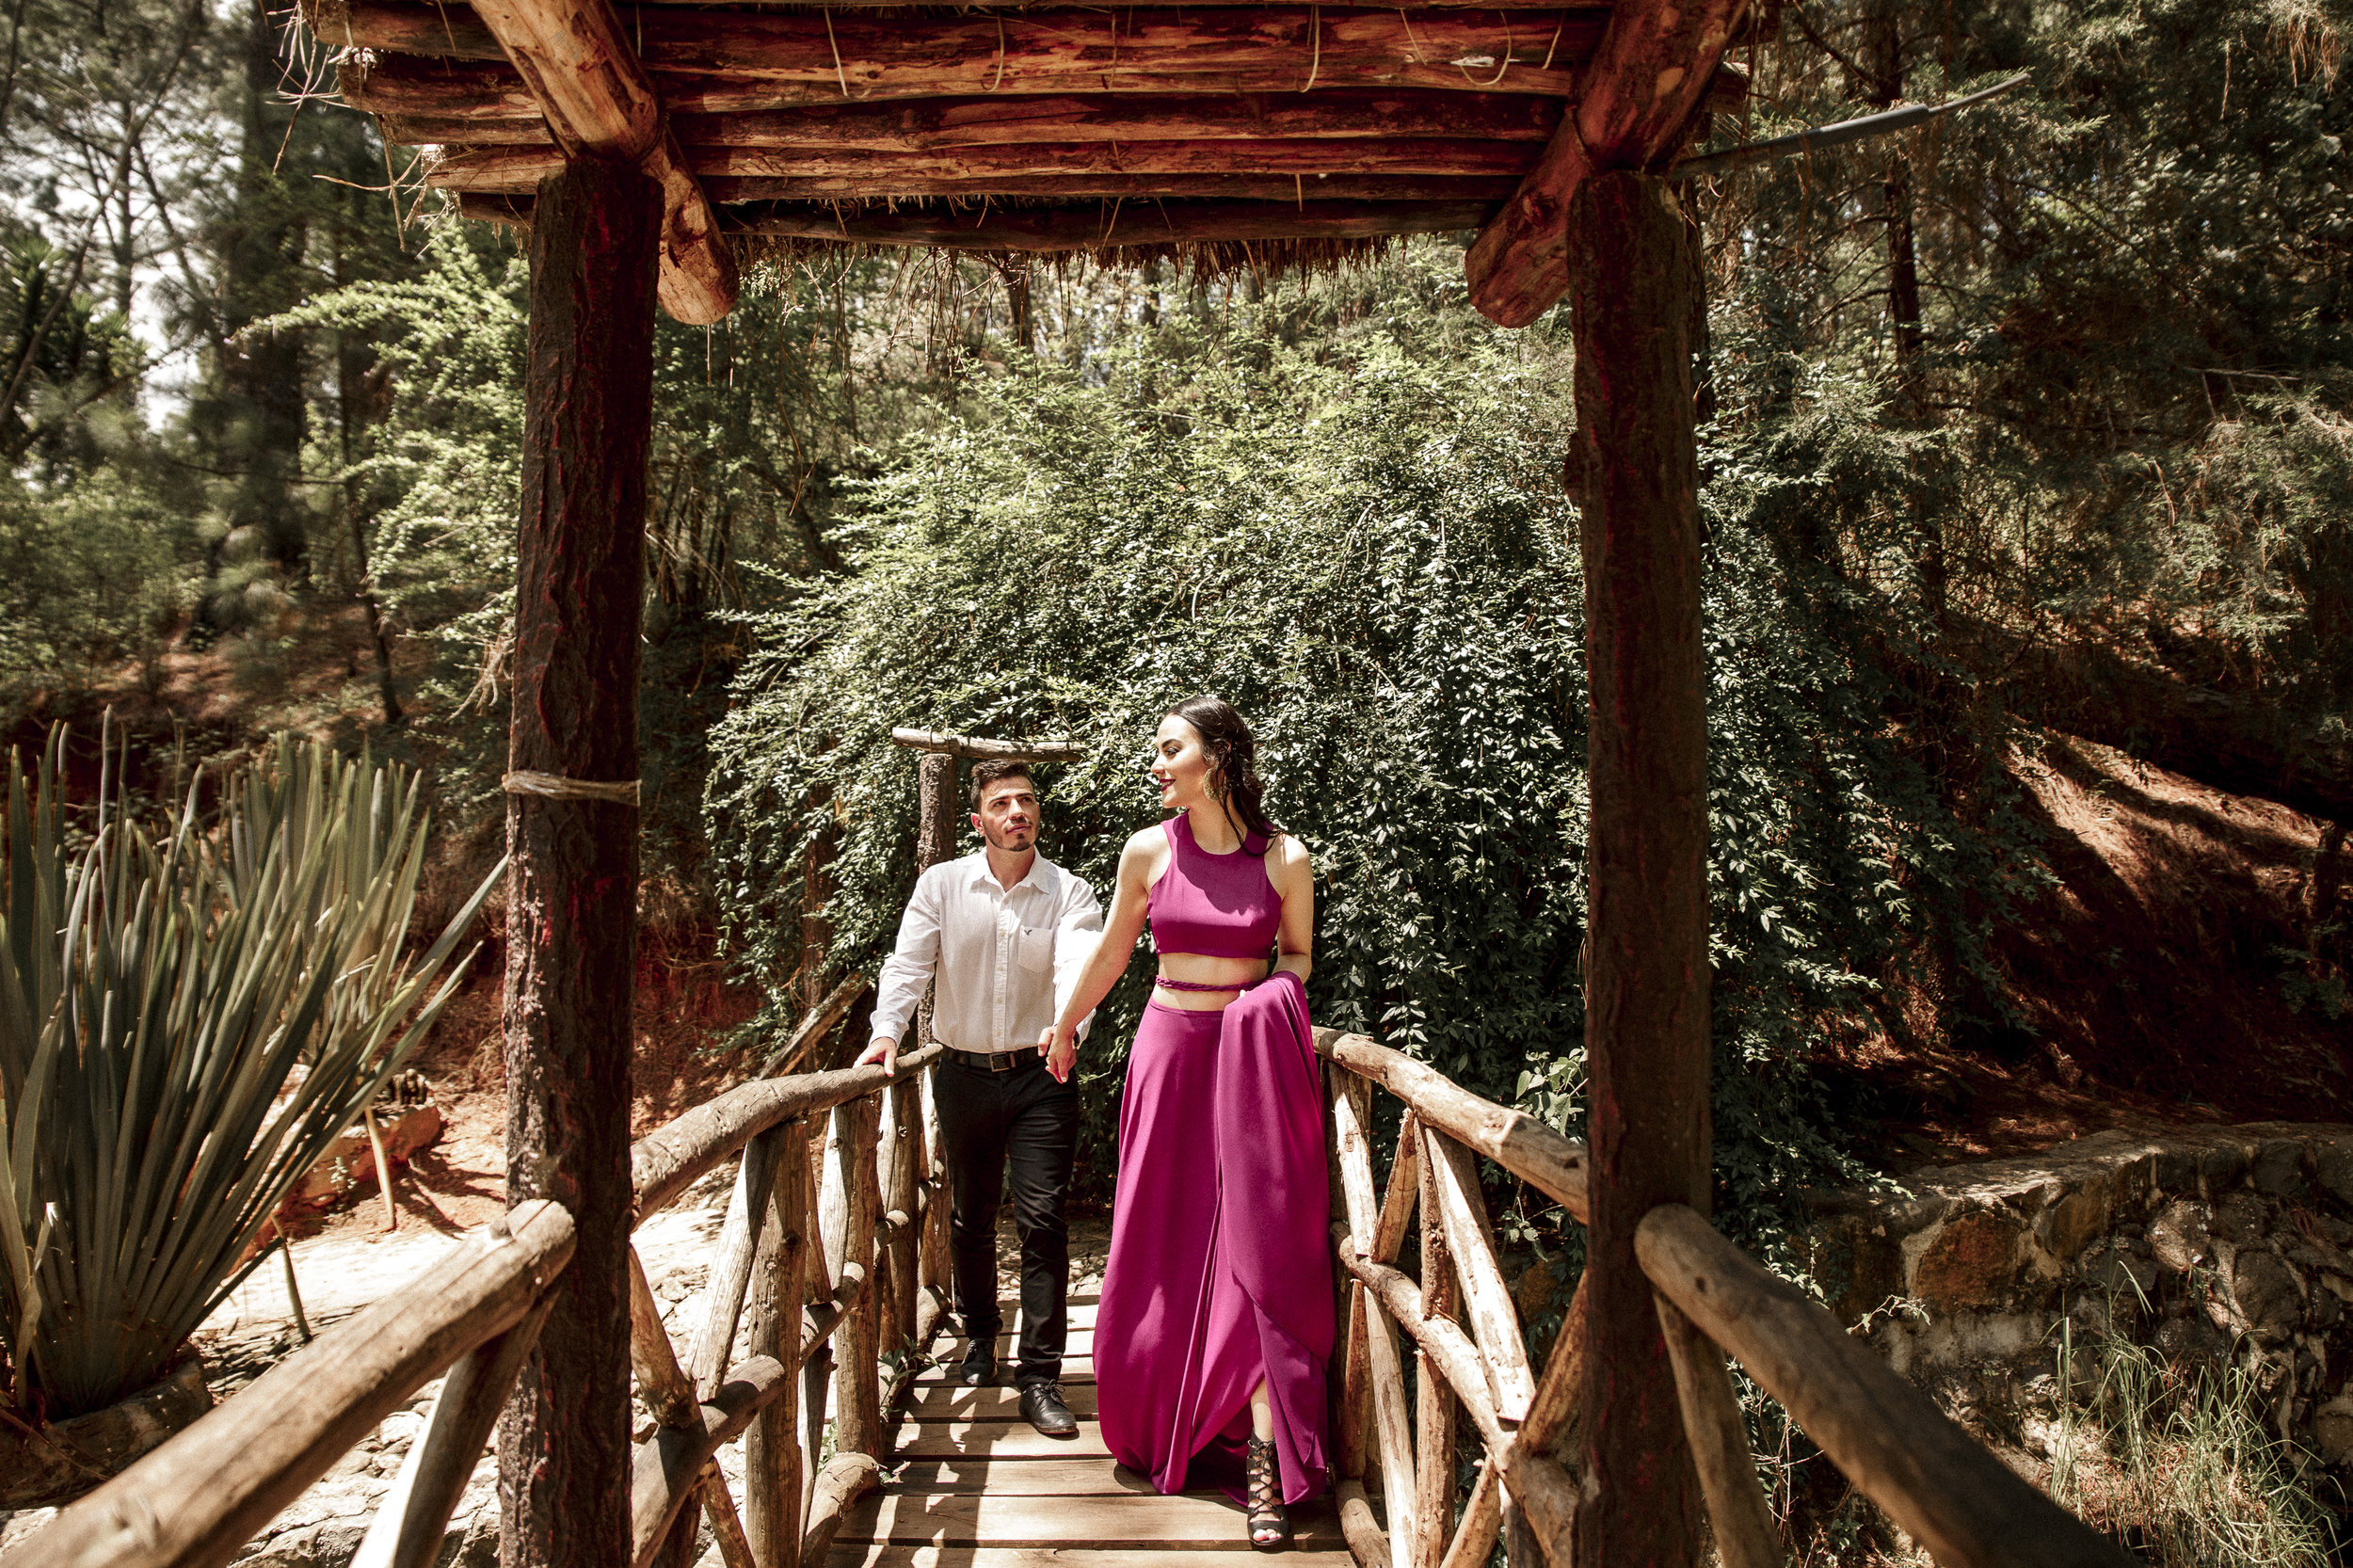 Fotografo-de-bodas-destino-Mexico-wedding-destination-photographer-san-miguel-de-allende-guanajuato-queretaro-boho-bohemian-bohemio-chic-editorial-carotida-photographer-lago-michoacan-sierra